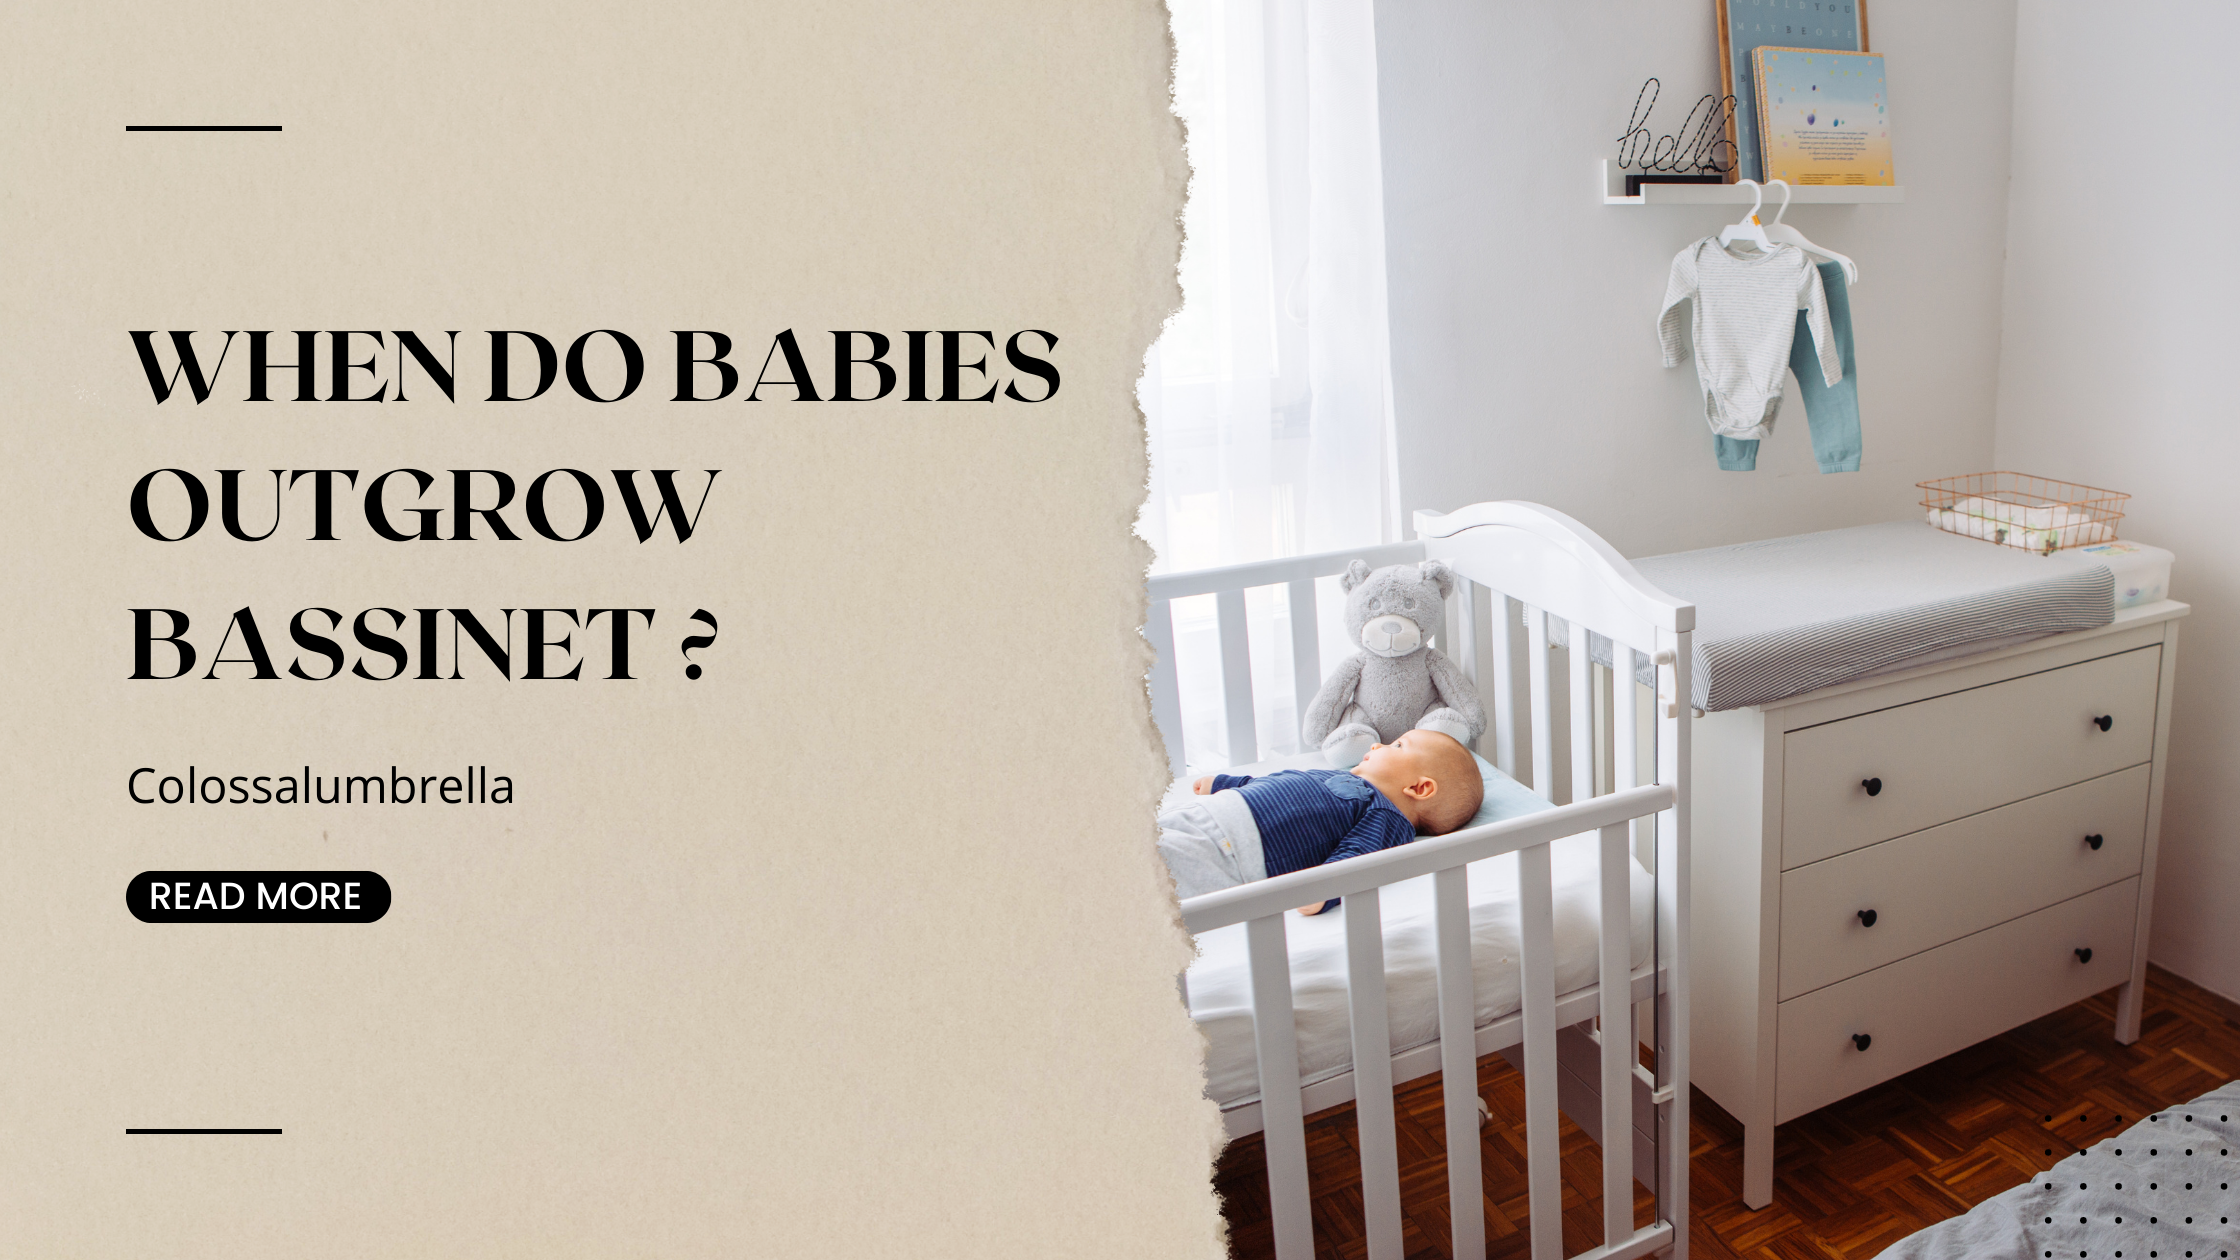 When Do Babies Outgrow Bassinet by Colossalumbrella